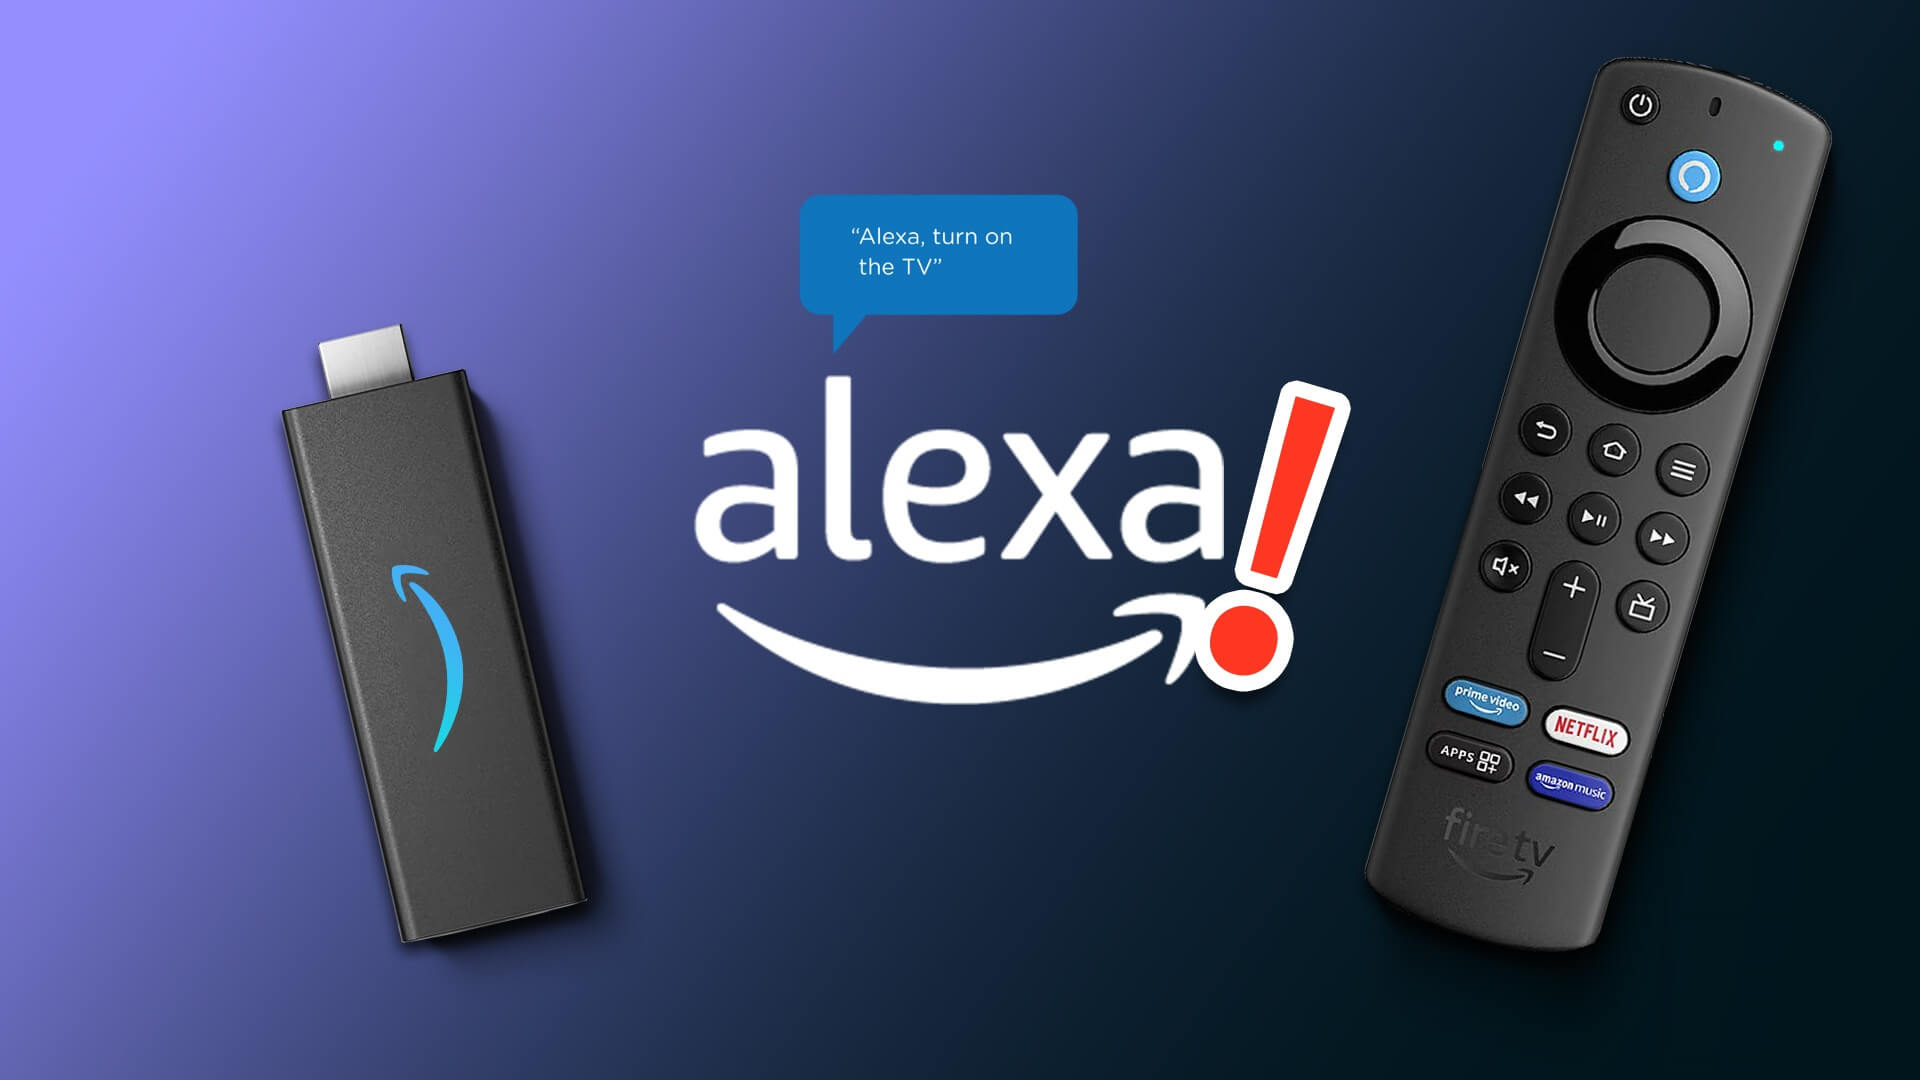 أفضل 9 إصلاحات لعدم استجابة Alexa للأوامر الصوتية على Amazon Fire TV Stick 4K - %categories